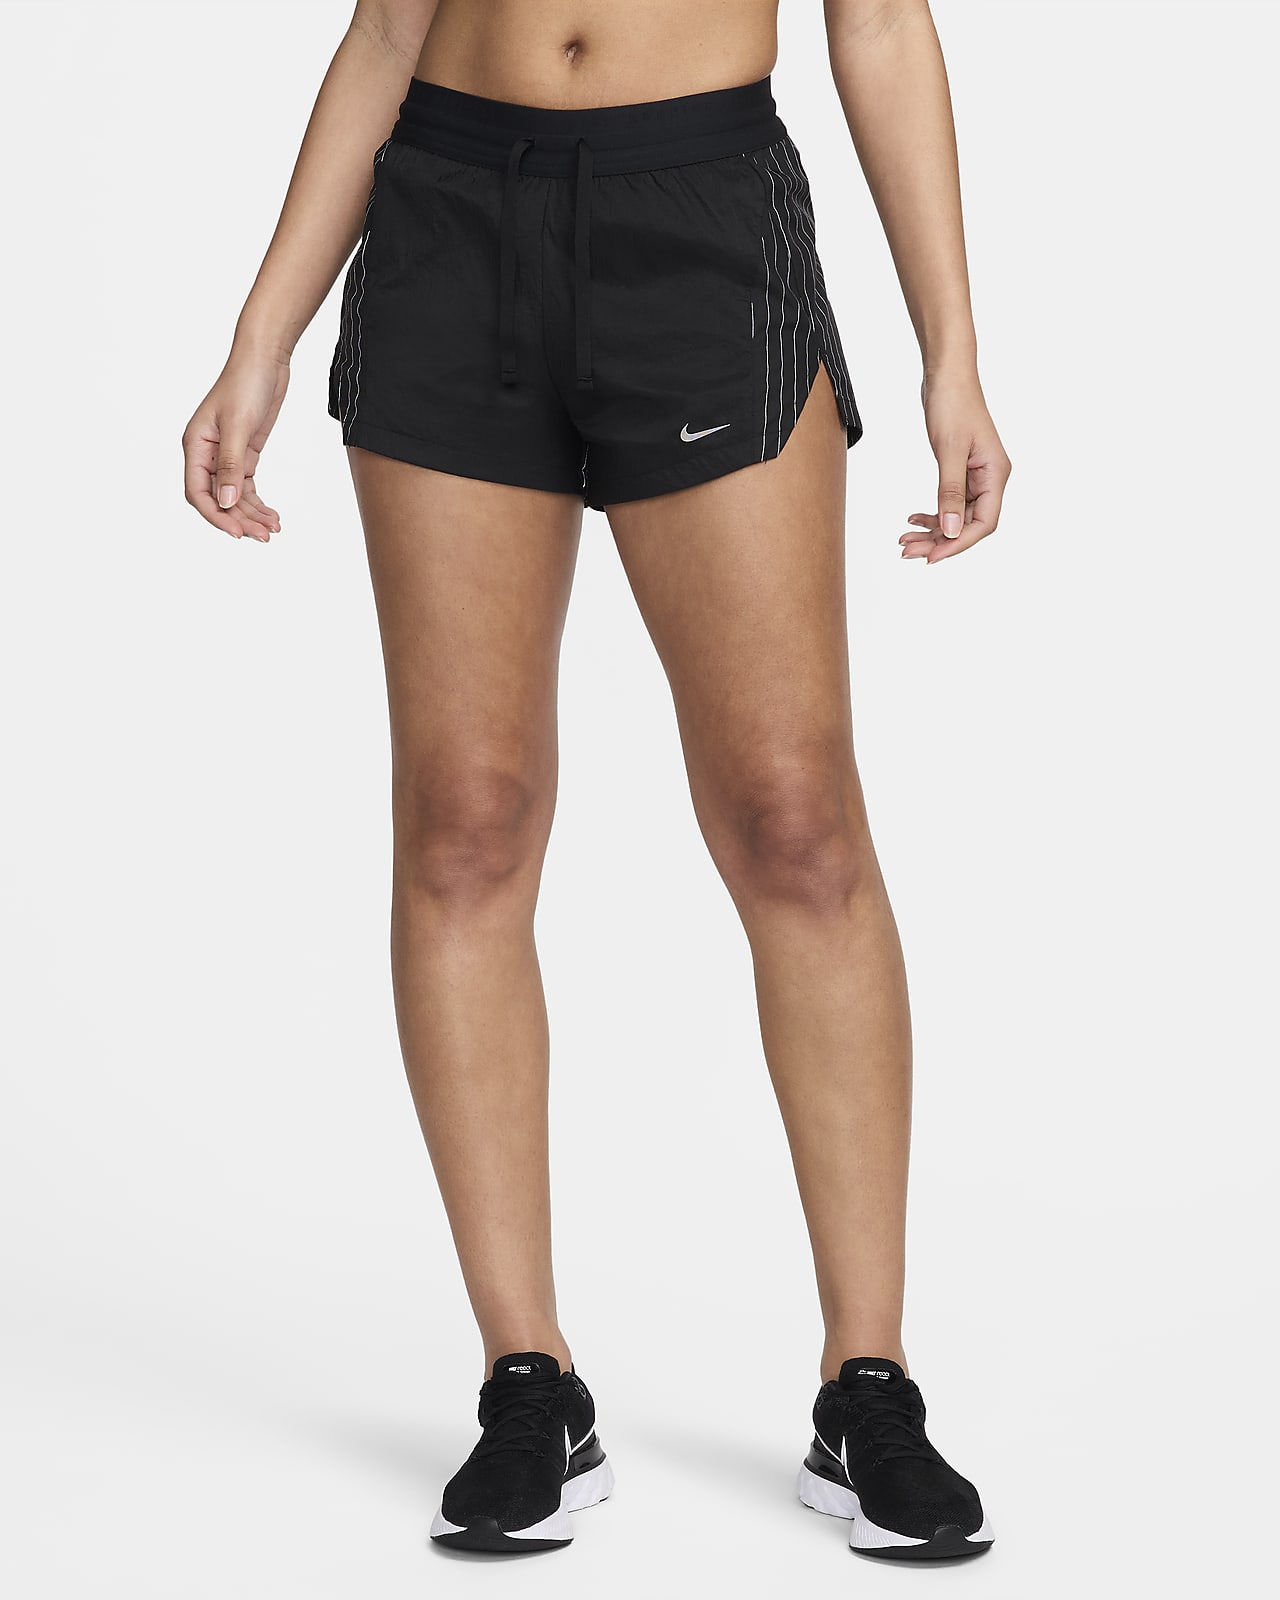 Nike Running Division Laufshorts mit Slip und halbhohem Bund für Damen (ca. 7,5 cm)